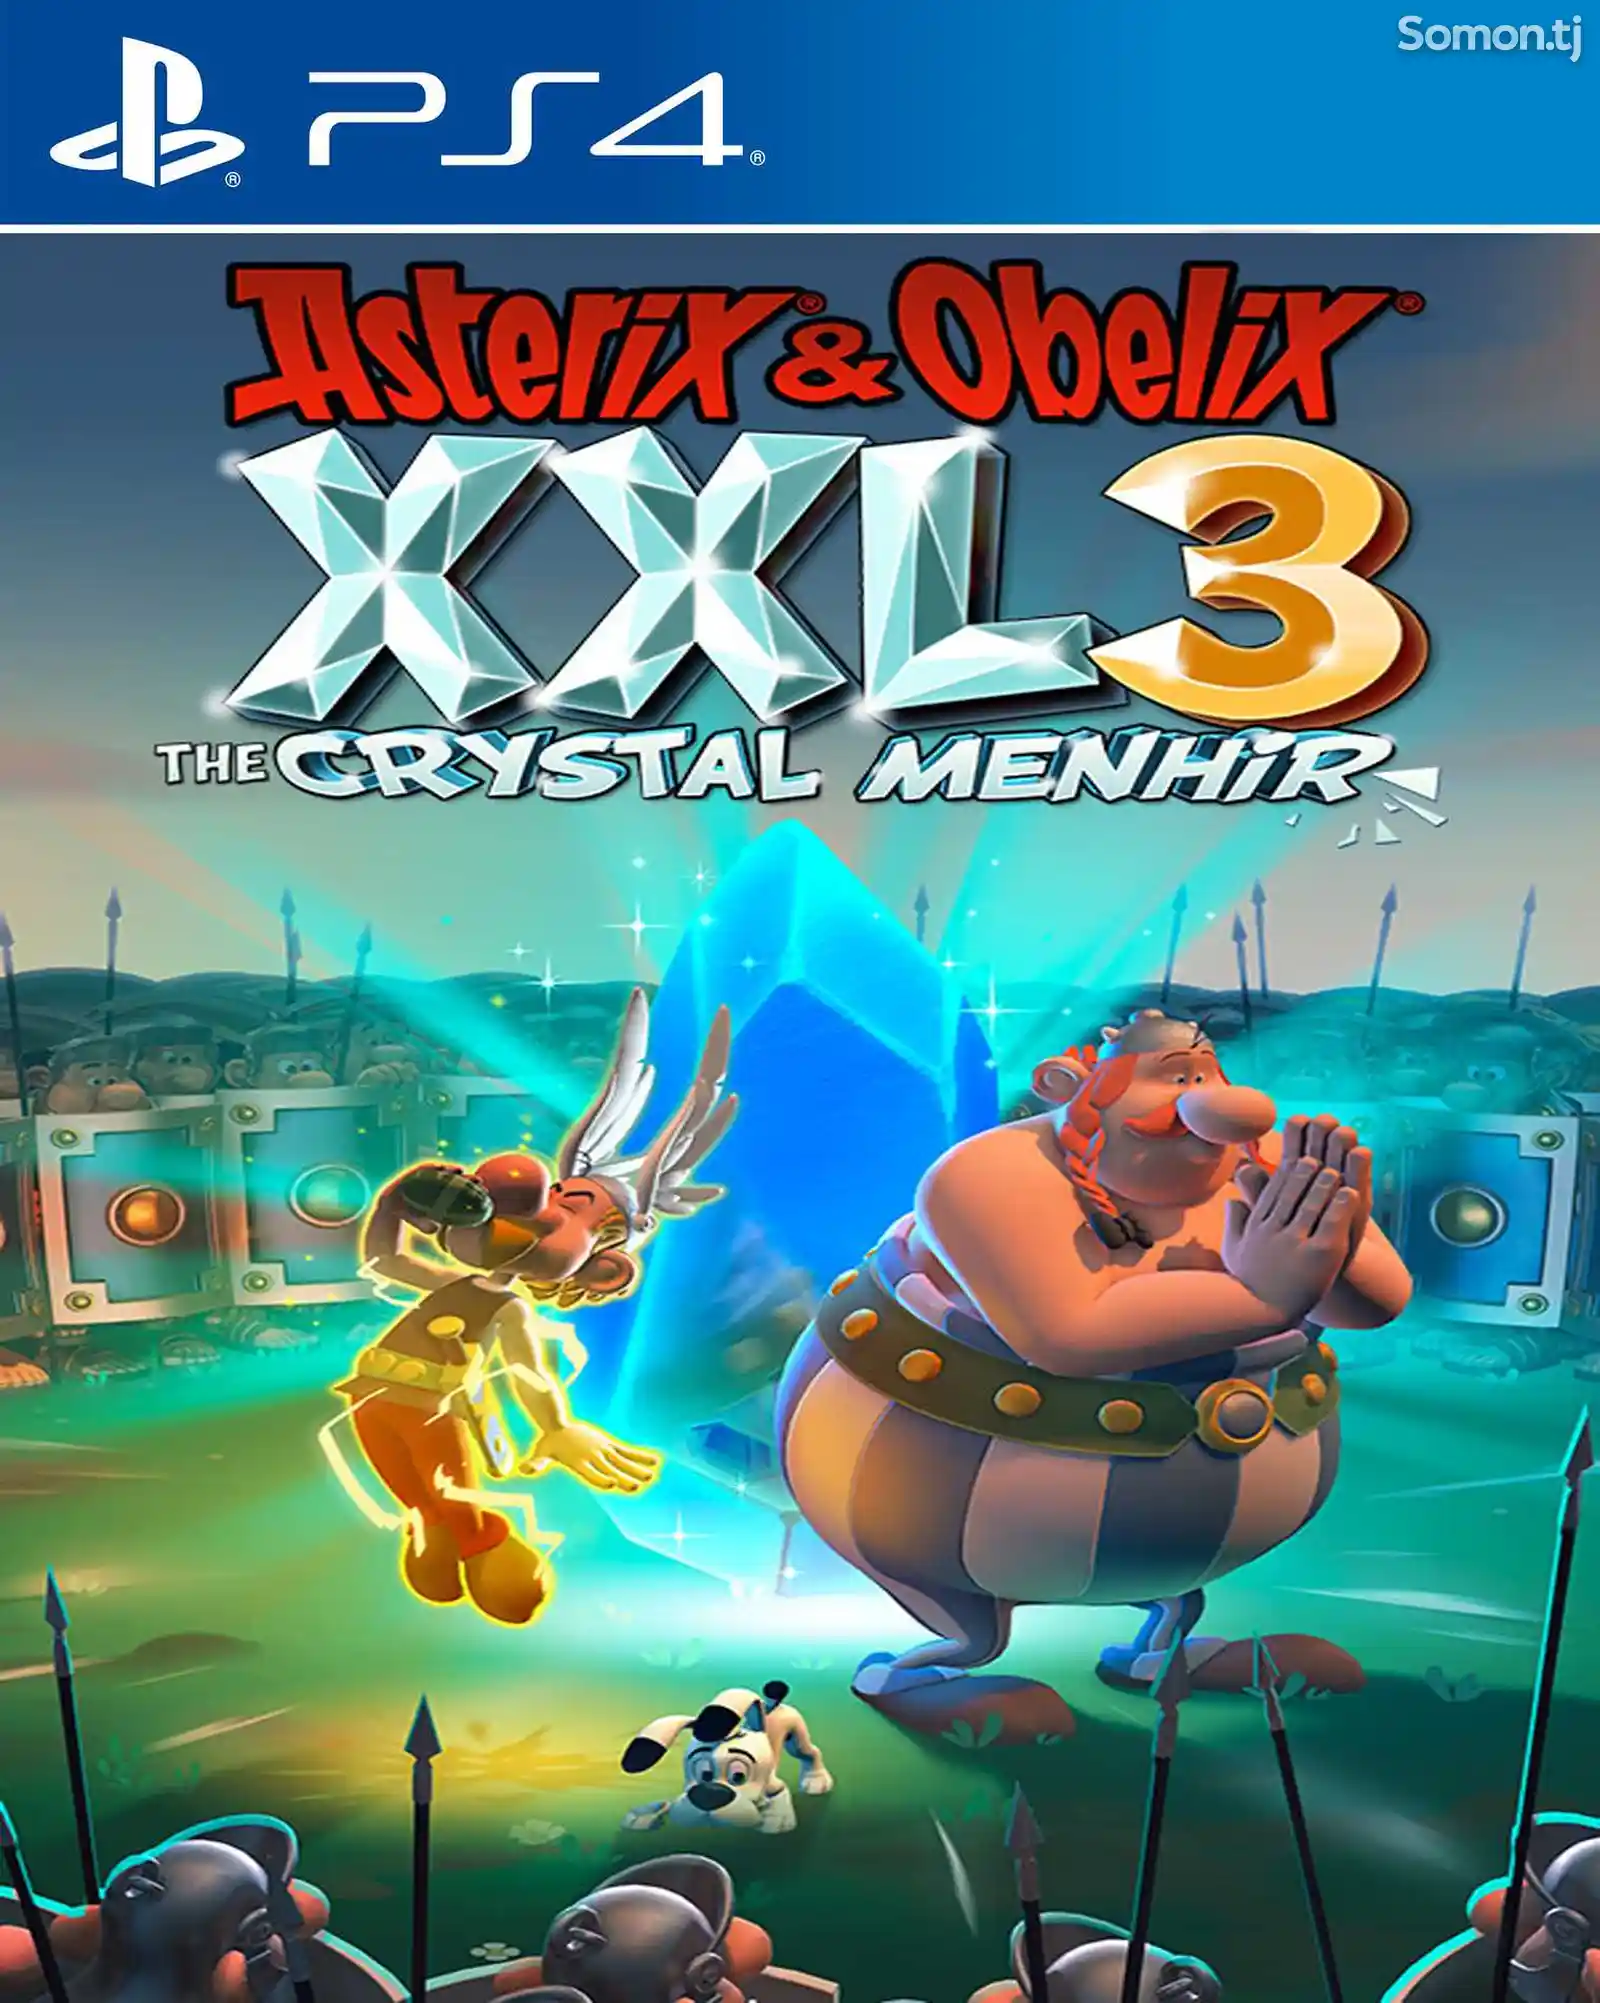 Игра Asterix obelix XXL3 crystal menhir для PS-4 / 5.05 / 6.72 / 7.02 / 9.00 /-1